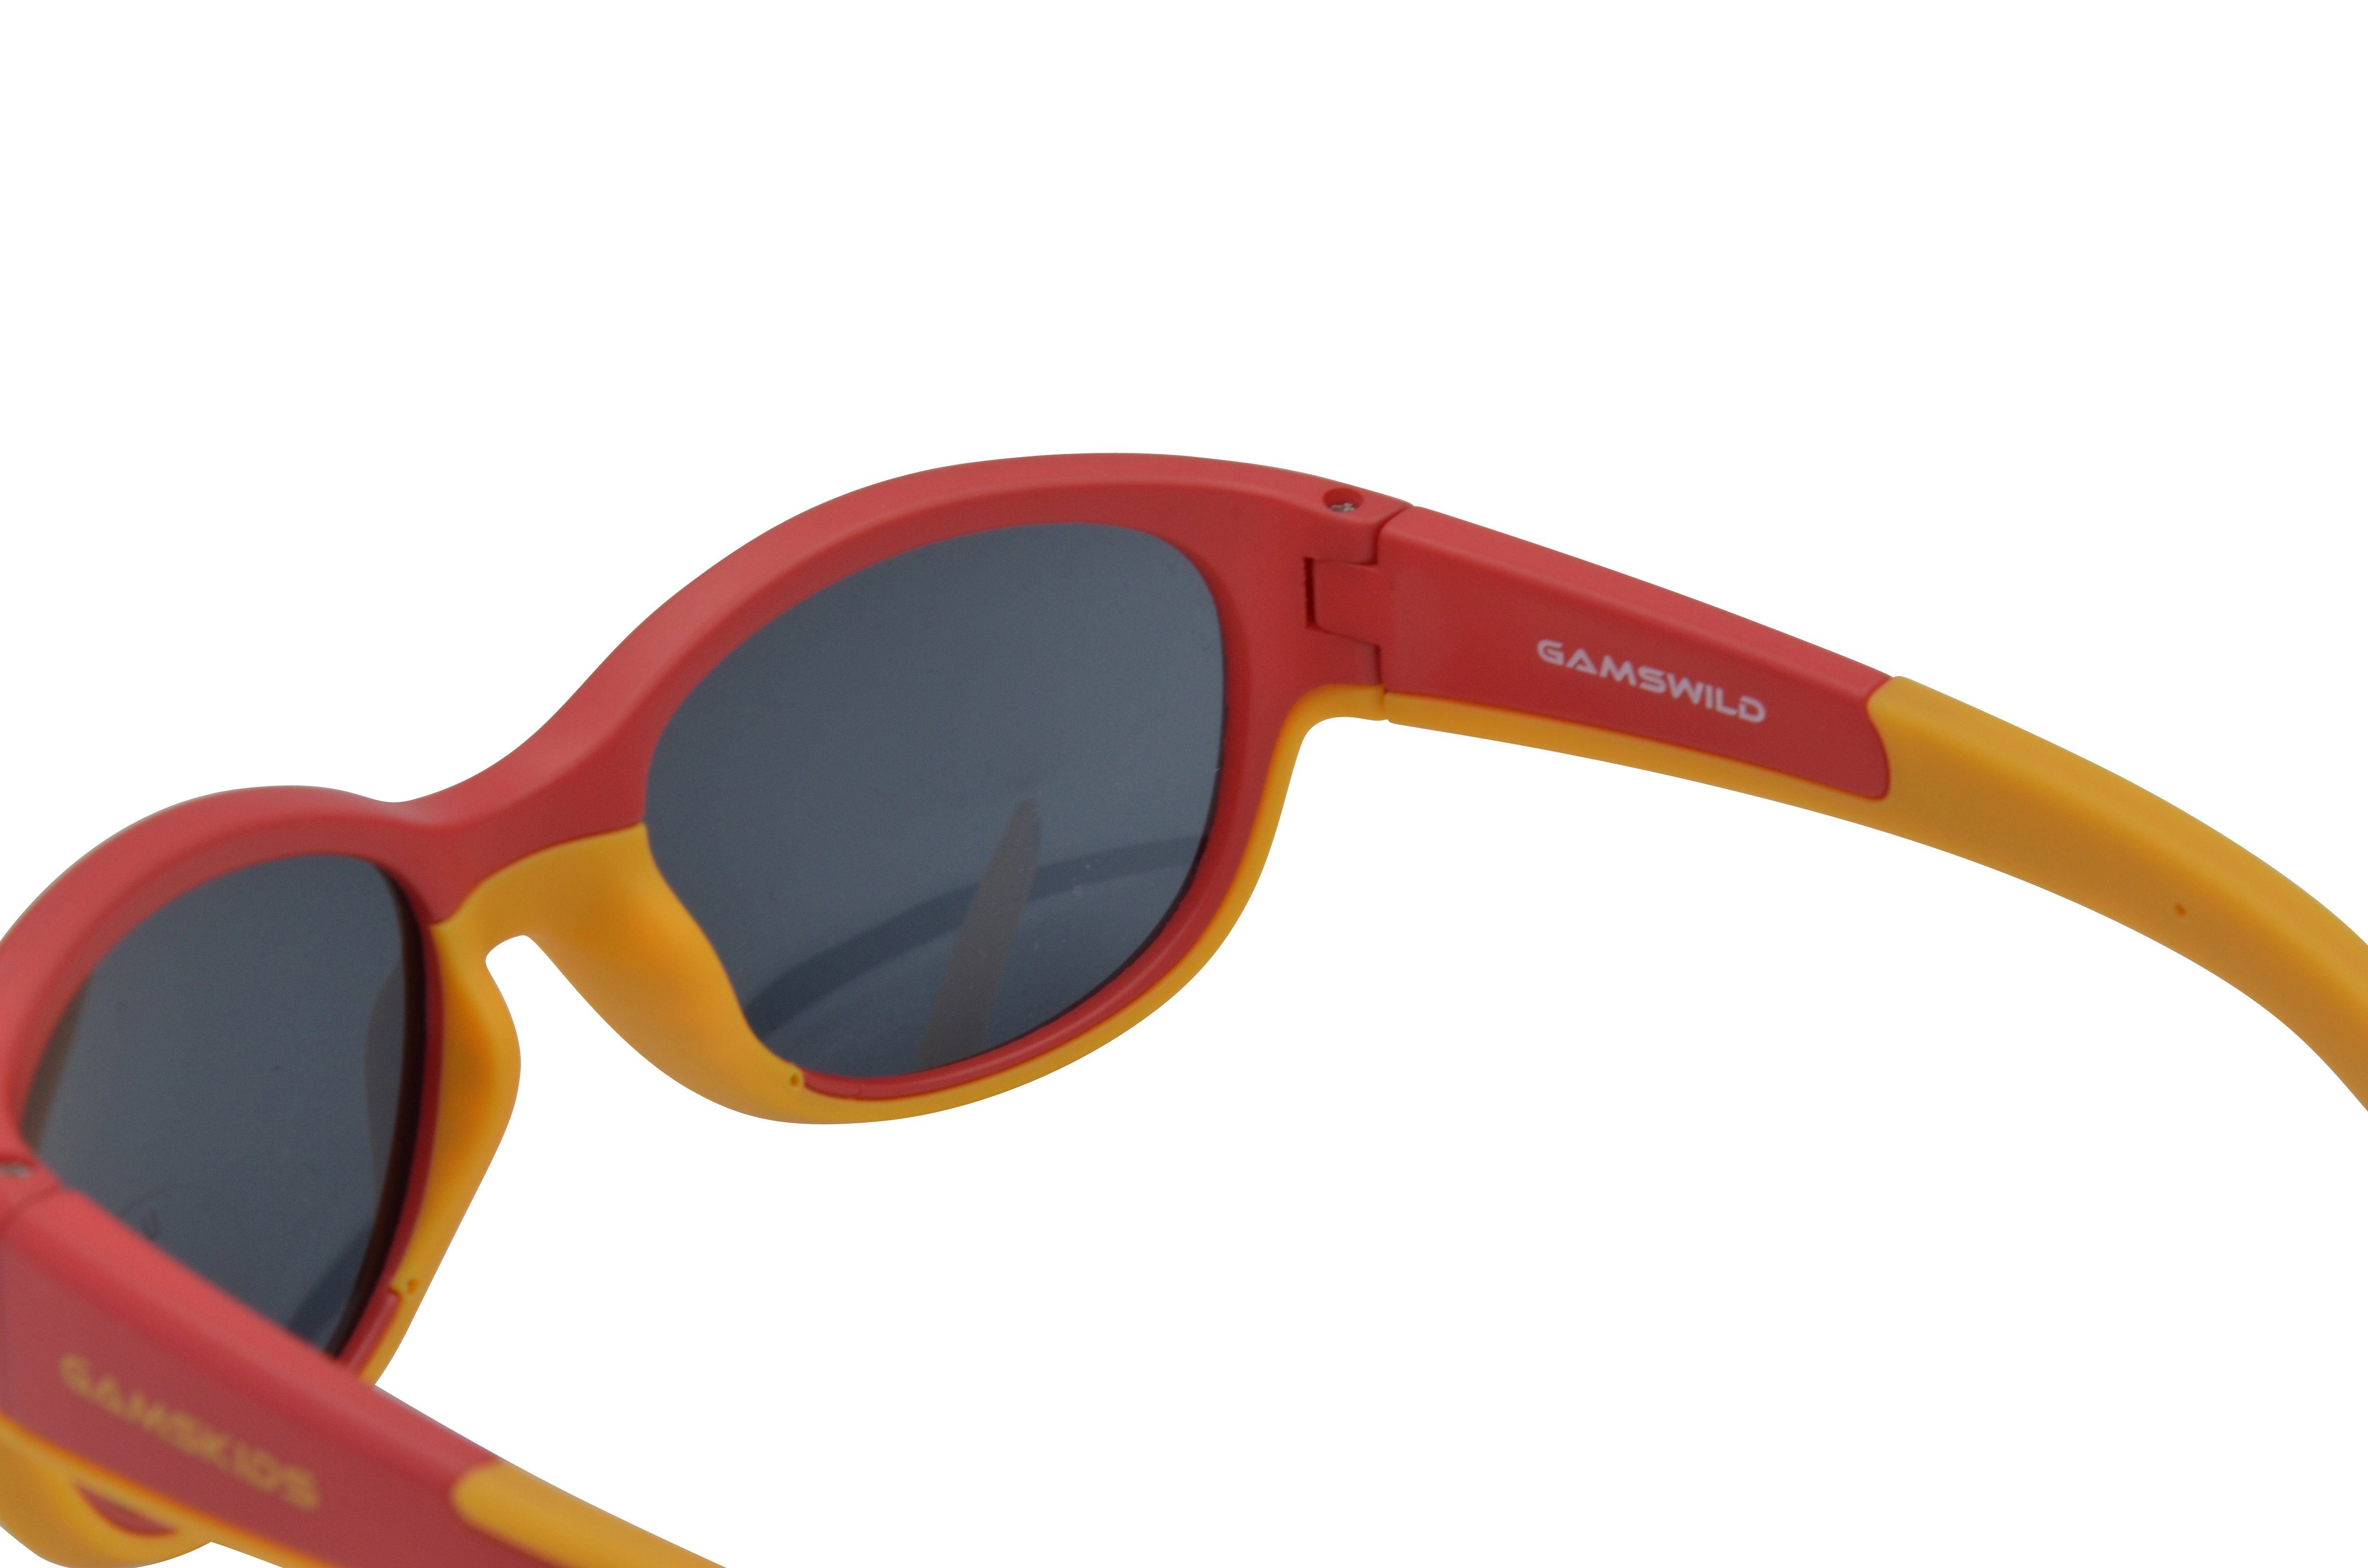 Jungen Kleinkindbrille mintgrün, Unisex, Mädchen WK7421 Kinderbrille Sonnenbrille kids incl. Brillenband Jahre Gamswild 2-5 GAMSKIDS pink, rot-orange